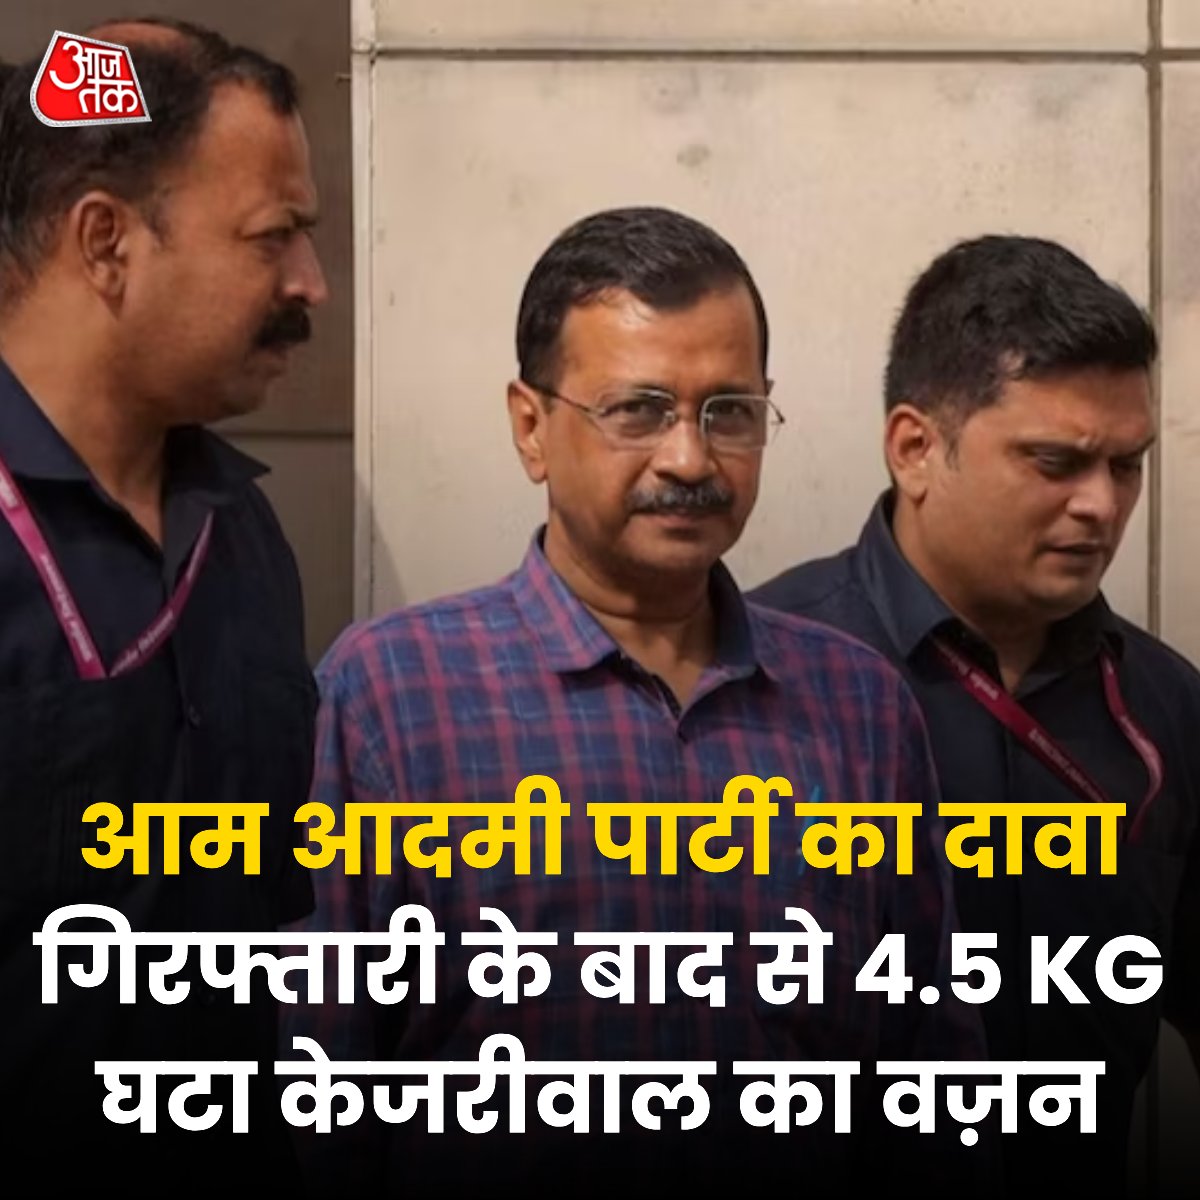 आम आदमी पार्टी के मुताबिक तिहाड़ जेल में बंद दिल्ली के मुख्यमंत्री अरविंद केजरीवाल का वजन तेजी से गिर रहा है. AAP का कहना है कि गिरफ्तारी के बाद से केजरीवाल का वजन 4.5 KG कम हो गया है और इसे लेकर डॉक्टर्स ने चिंता जताई है. वहीं तिहाड़ जेल प्रशासन ने कहा है कि अरविंद केजरीवाल जब…